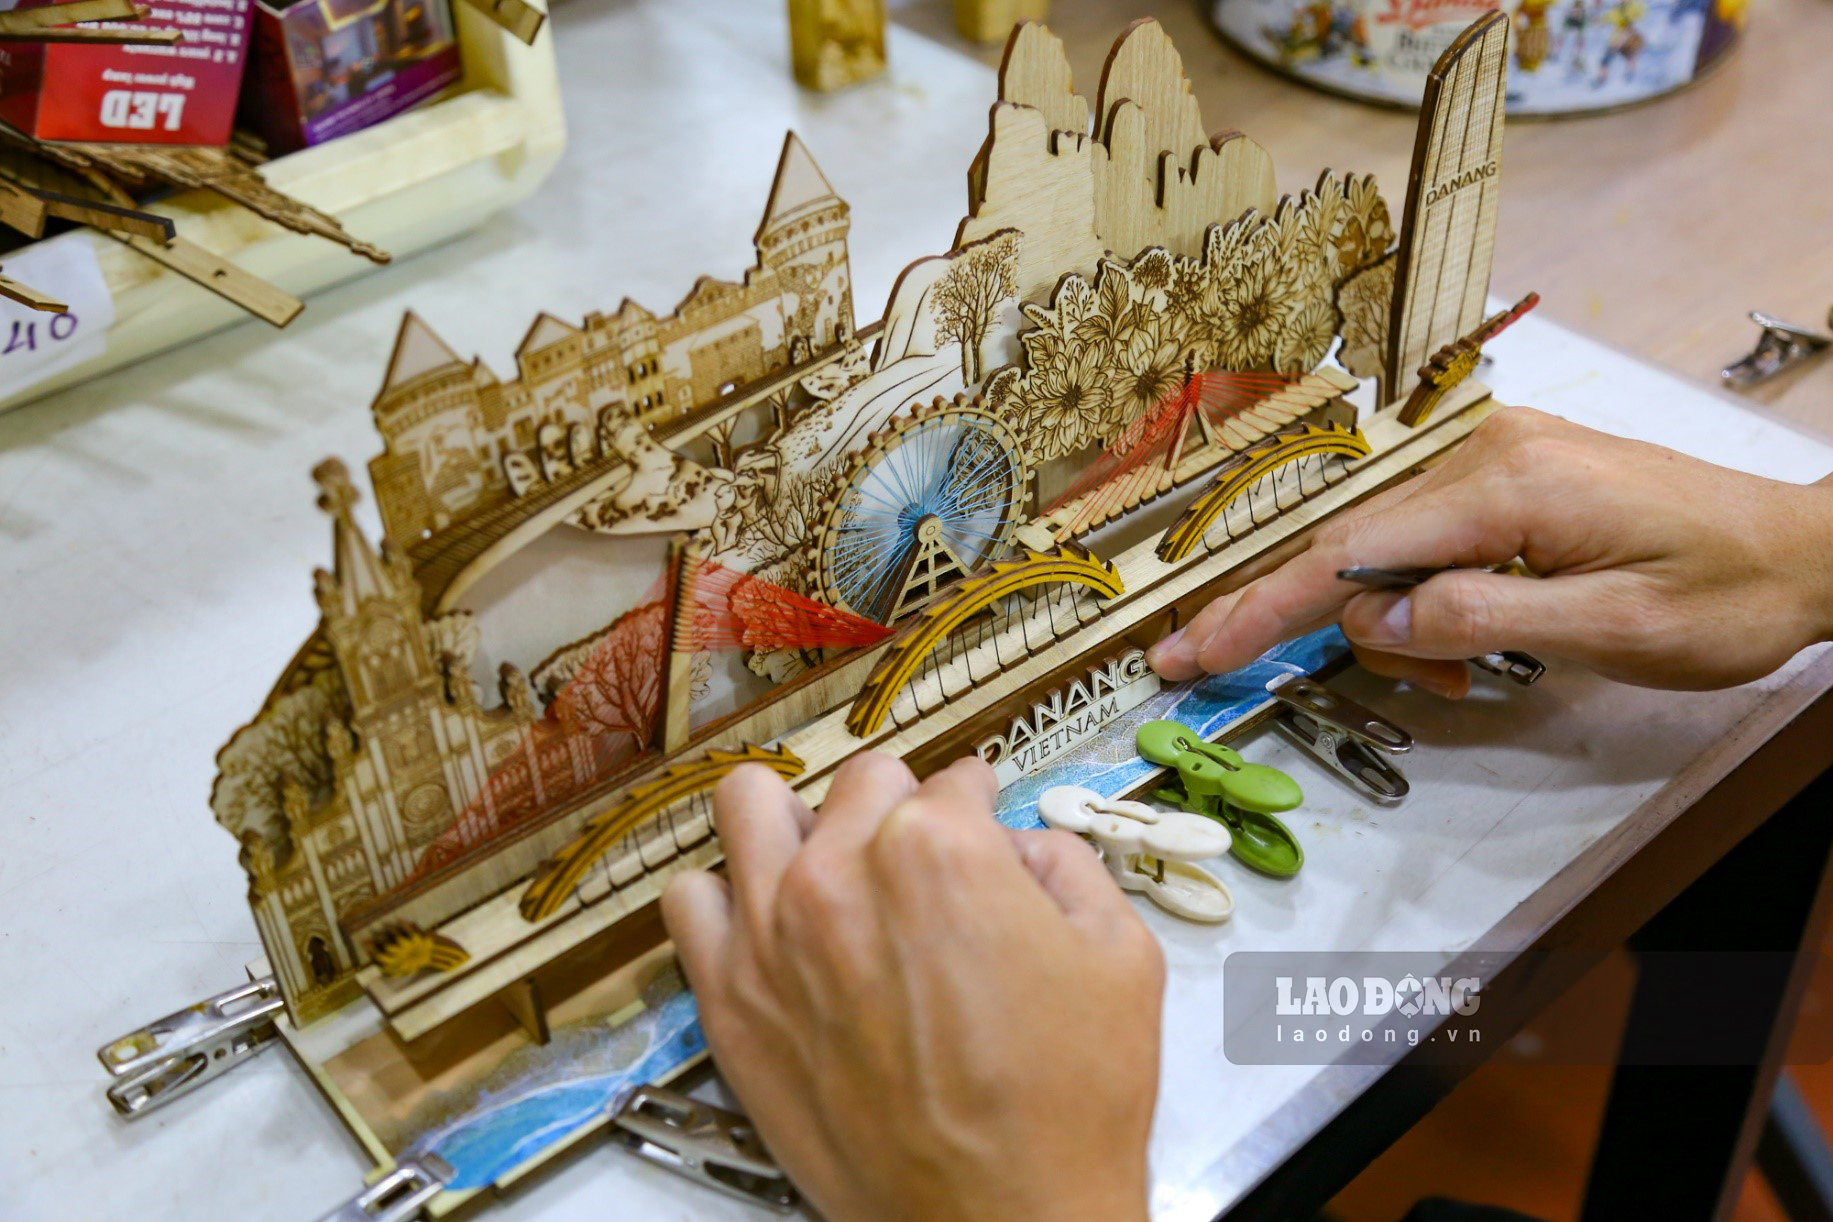 Những mô hình là các sản phẩm 2D hoặc 3D về cầu Rồng, chùa Linh Ứng, cầu Vàng, Bà Nà Hills,… với chất liệu là gỗ tự nhiên được anh Bính lắp ráp từ hàng chục cho đến hàng trăm chi tiết khác nhau.